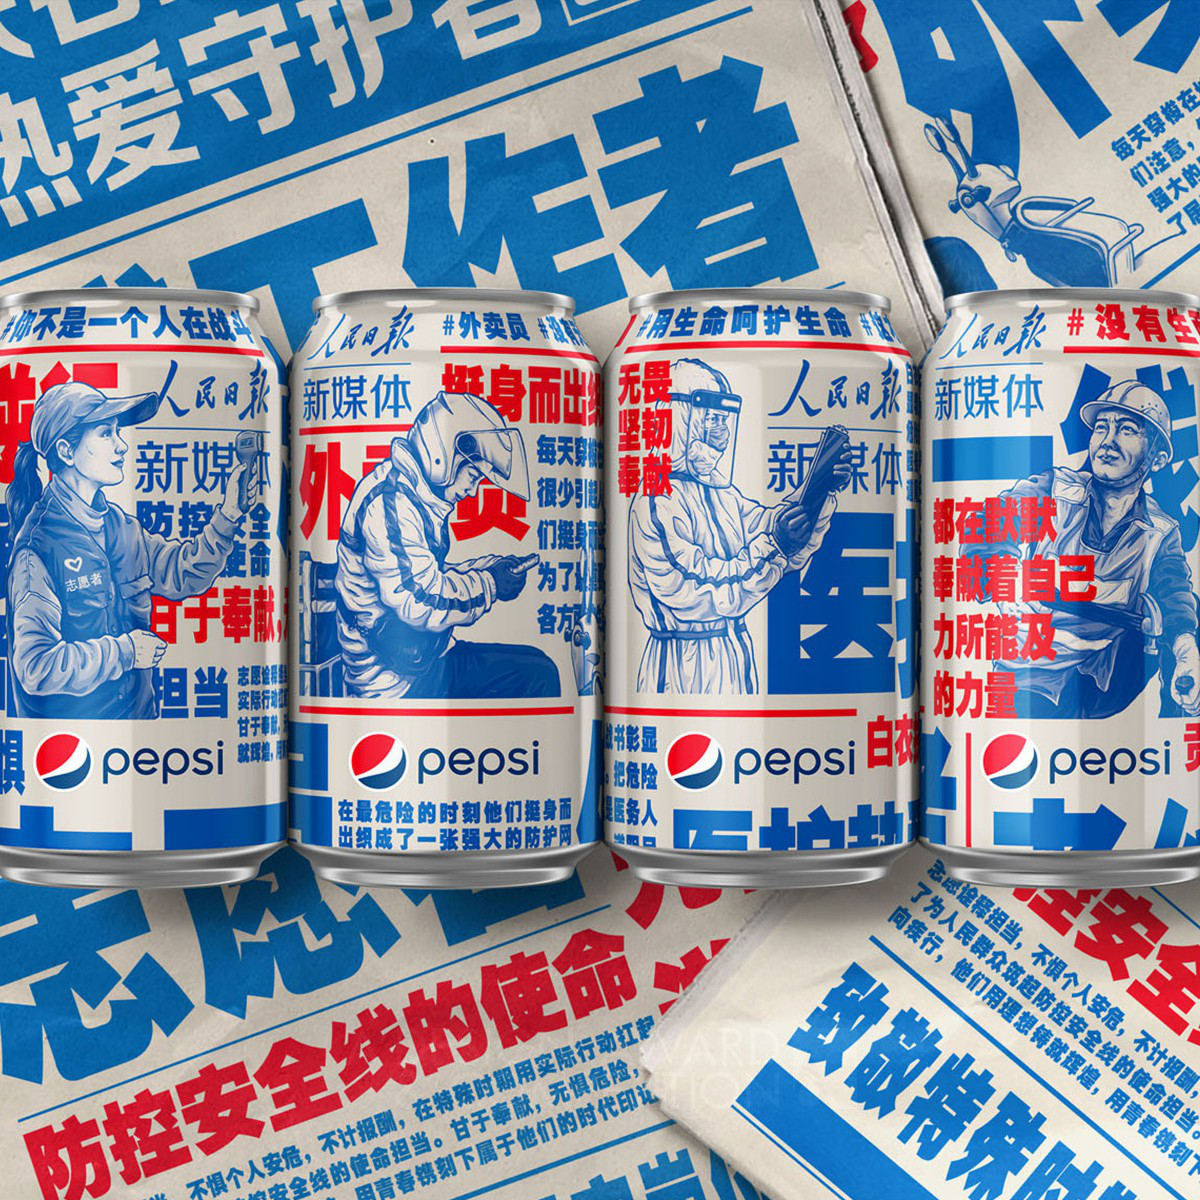 Pepsi Chinas People Daily New Media 